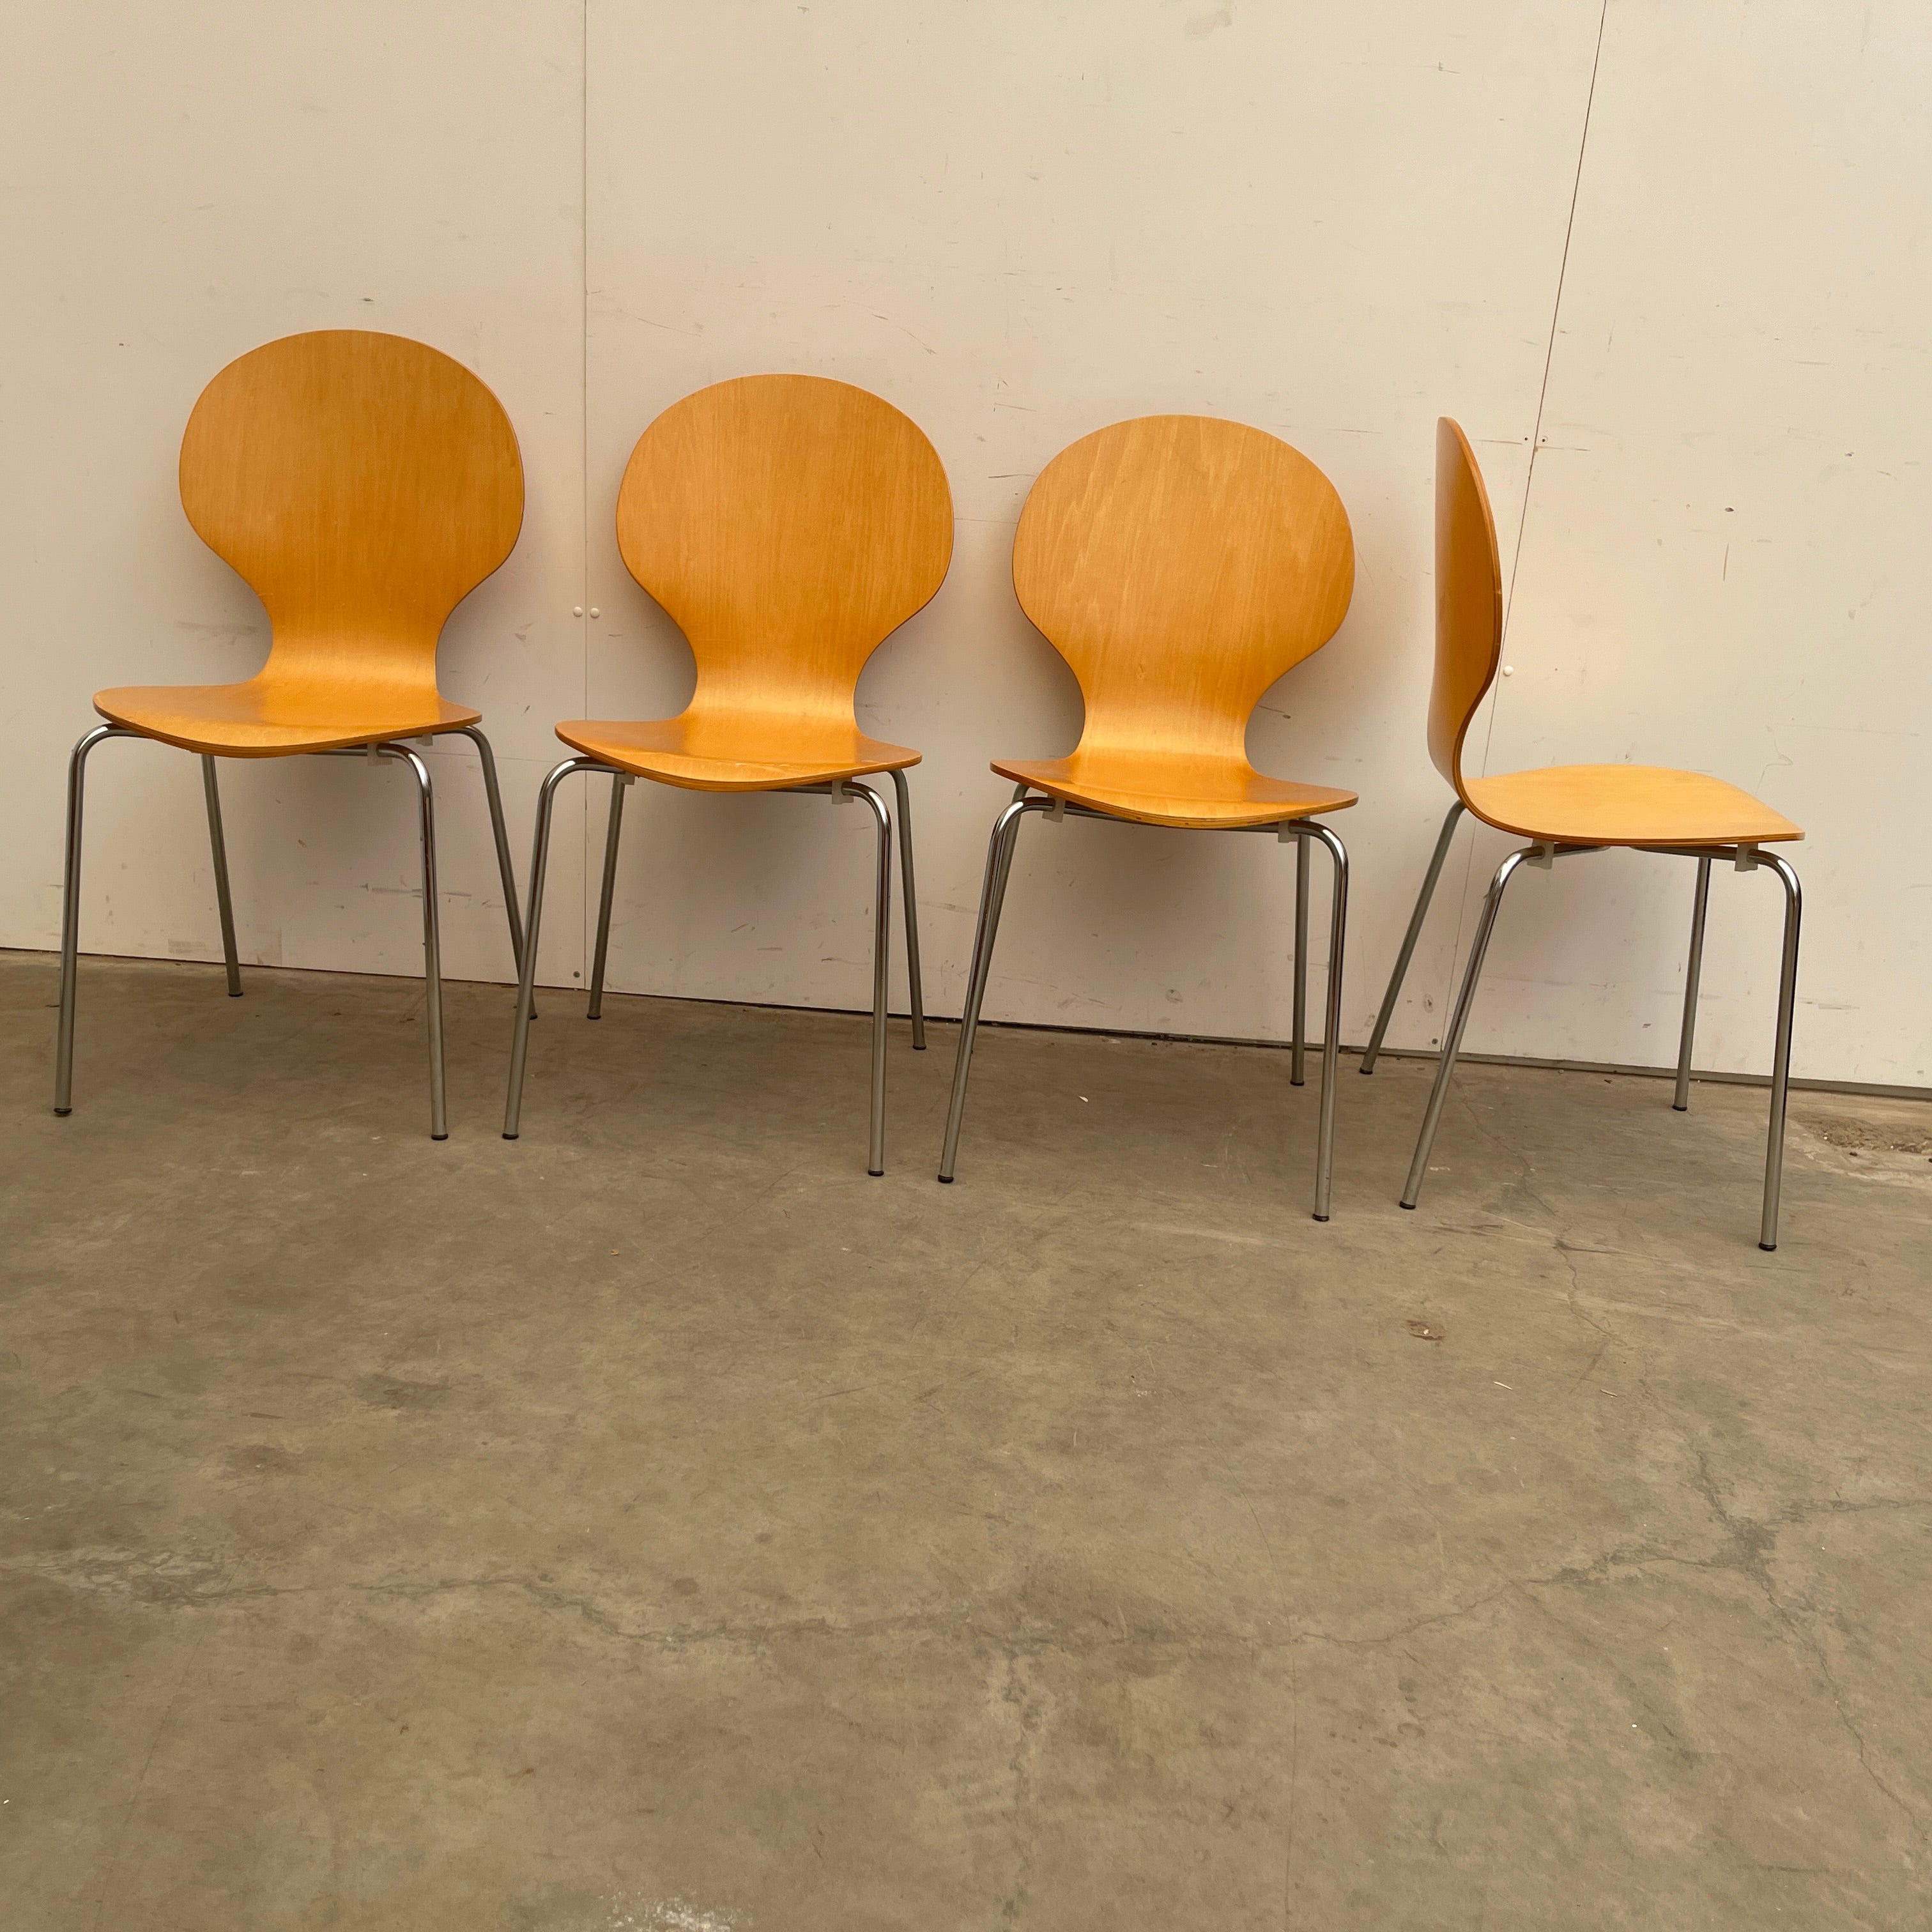 Onze onderneming intern Eik 4 x Vintage Design "Vlinderstoel" Stoel Set – mamakringloop.nl